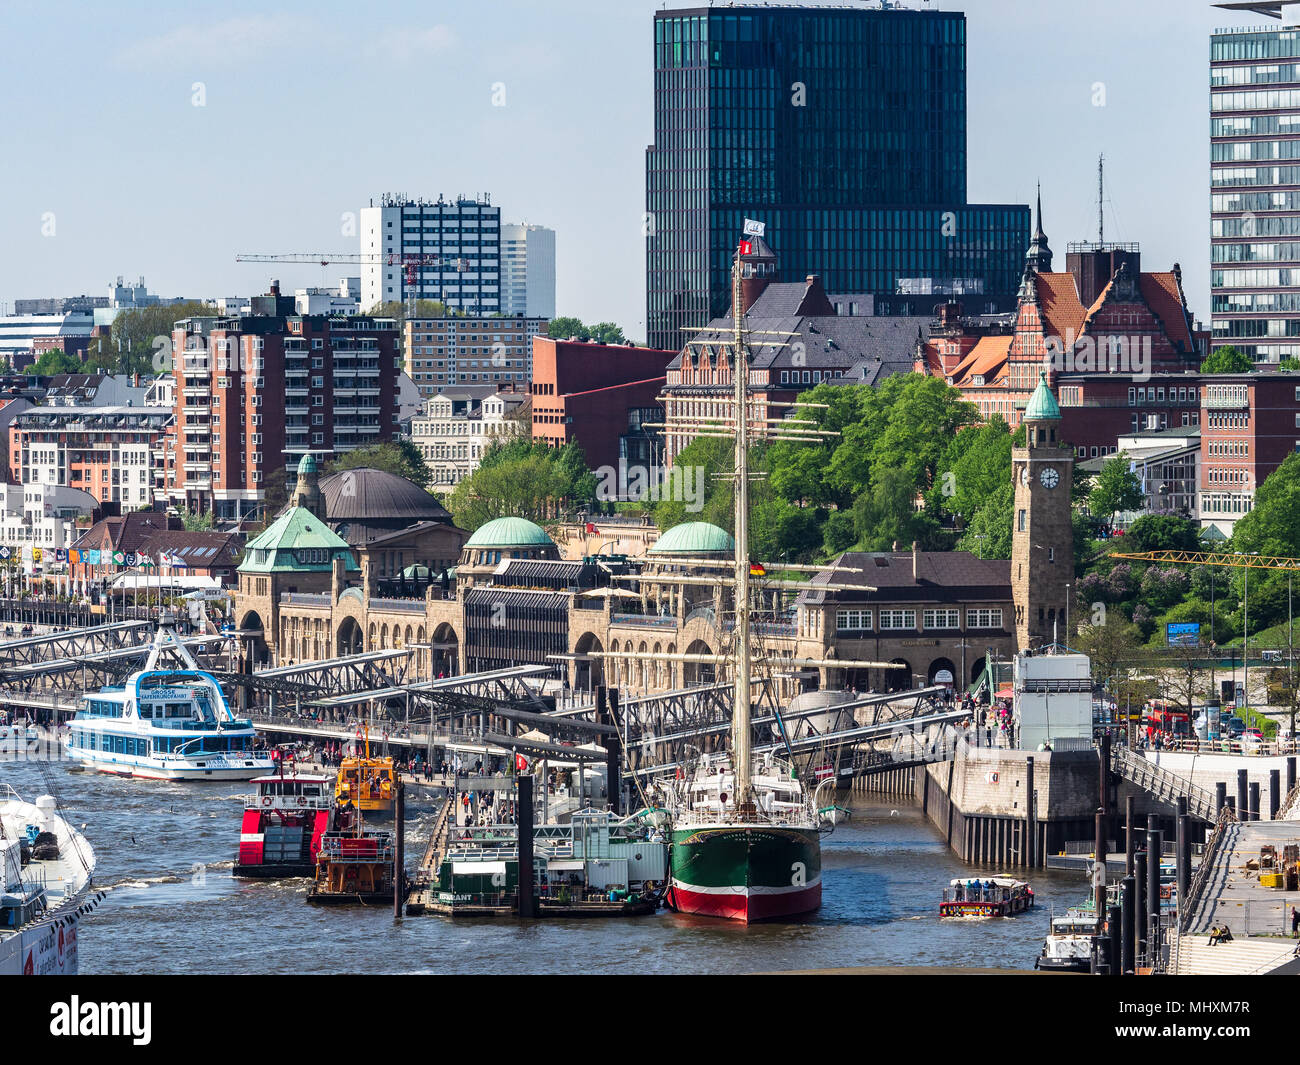 Muelle Landungsbrücken Hamburgo - un muelle flotante de 700 metros de largo sobre el río Elba, en el centro de Hamburgo Foto de stock